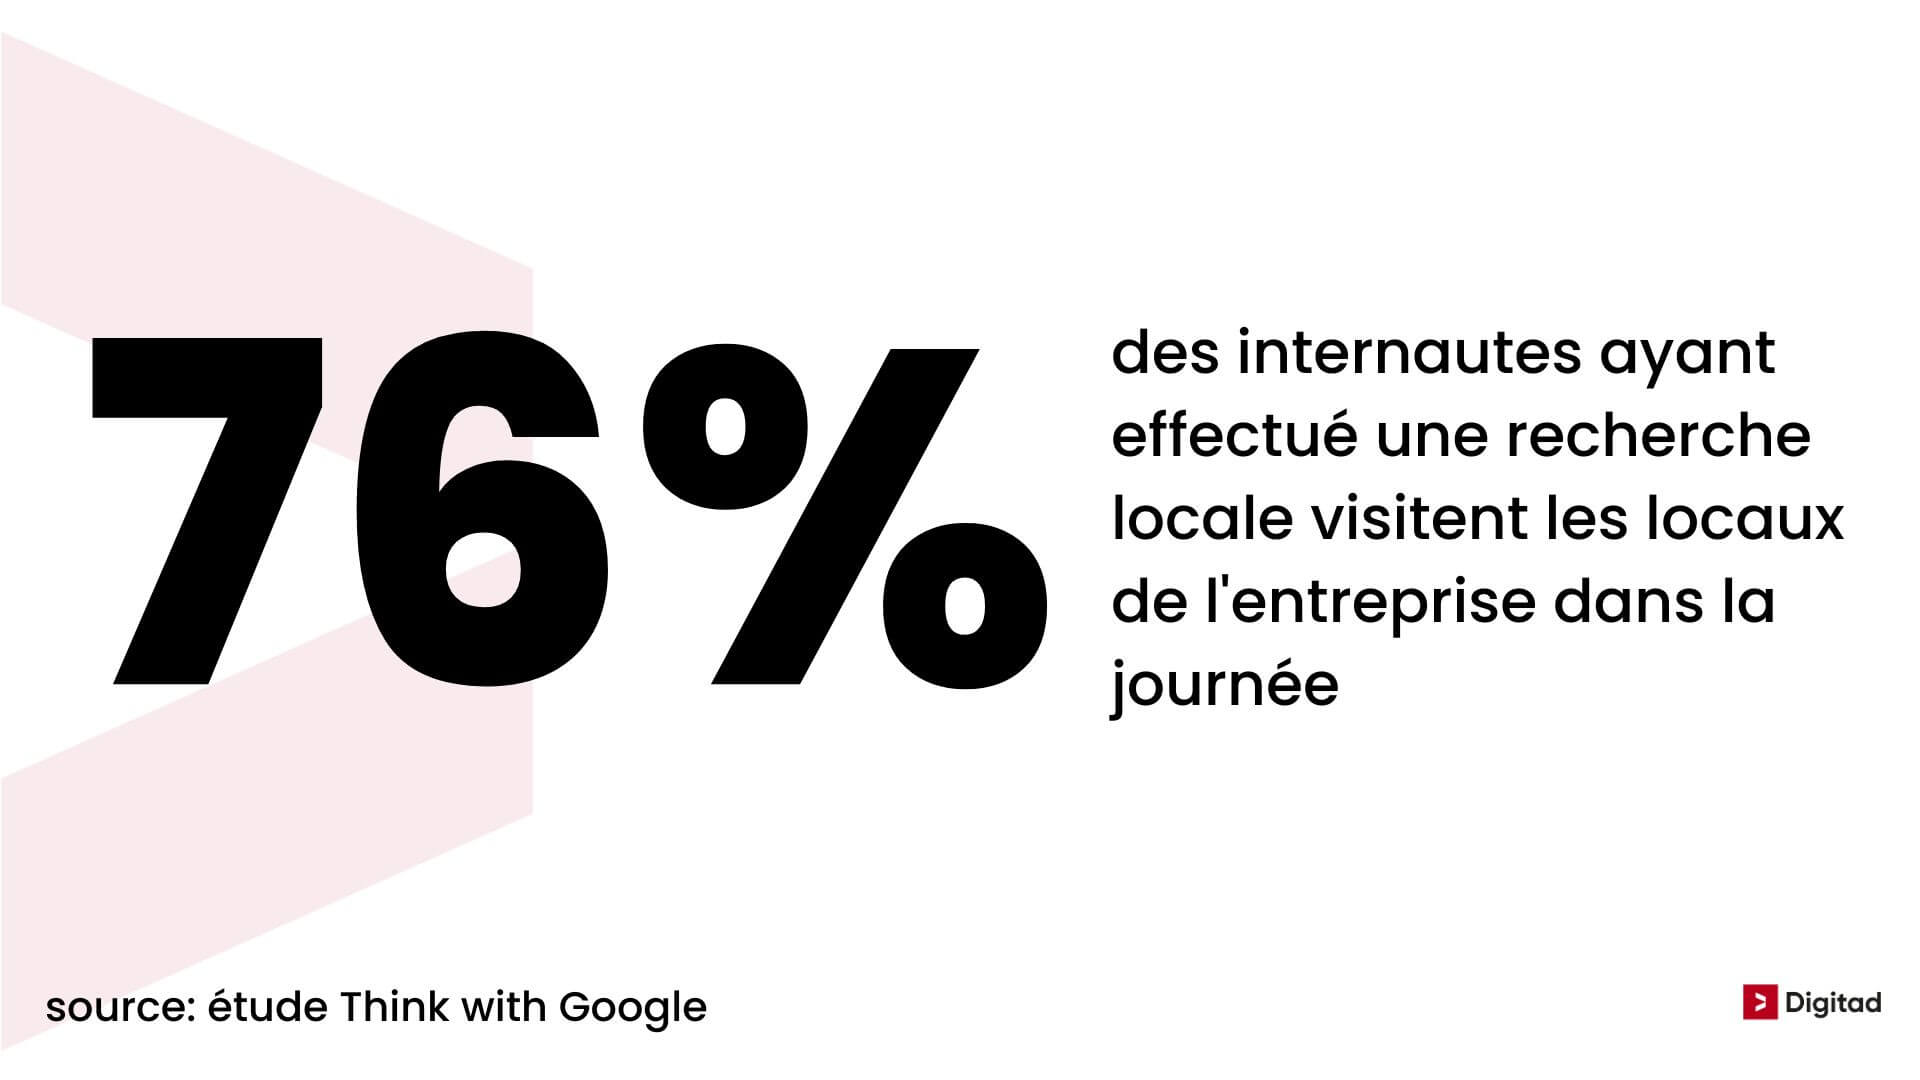 76% des internautes ayant effectué une recherche locale viennent dans l'entreprise dans la journée.